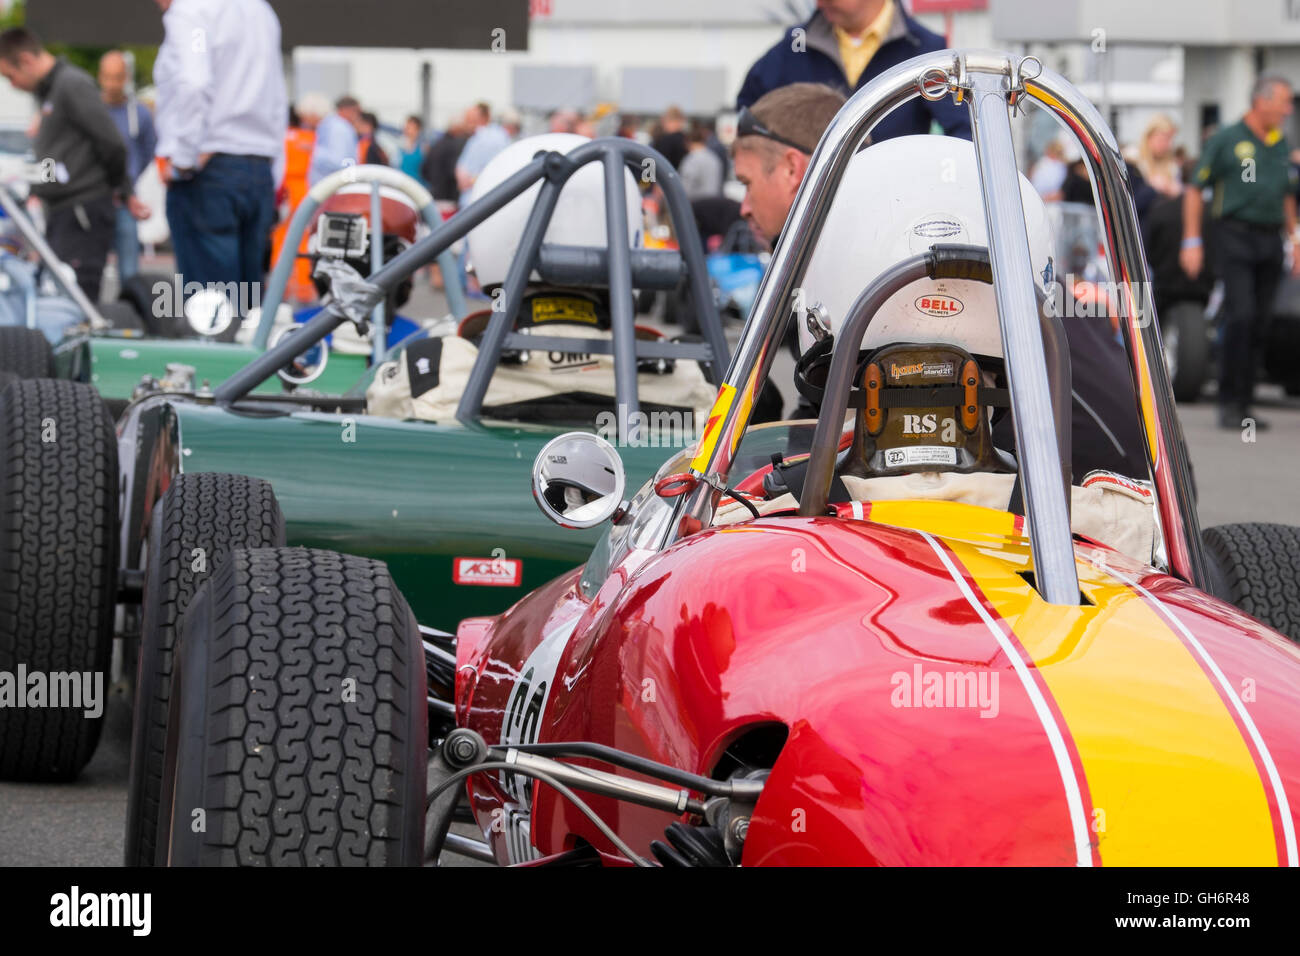 Formule Junior racing voitures alignées dans le paddock au Silverstone Classic 2016 Événement, England, UK Banque D'Images